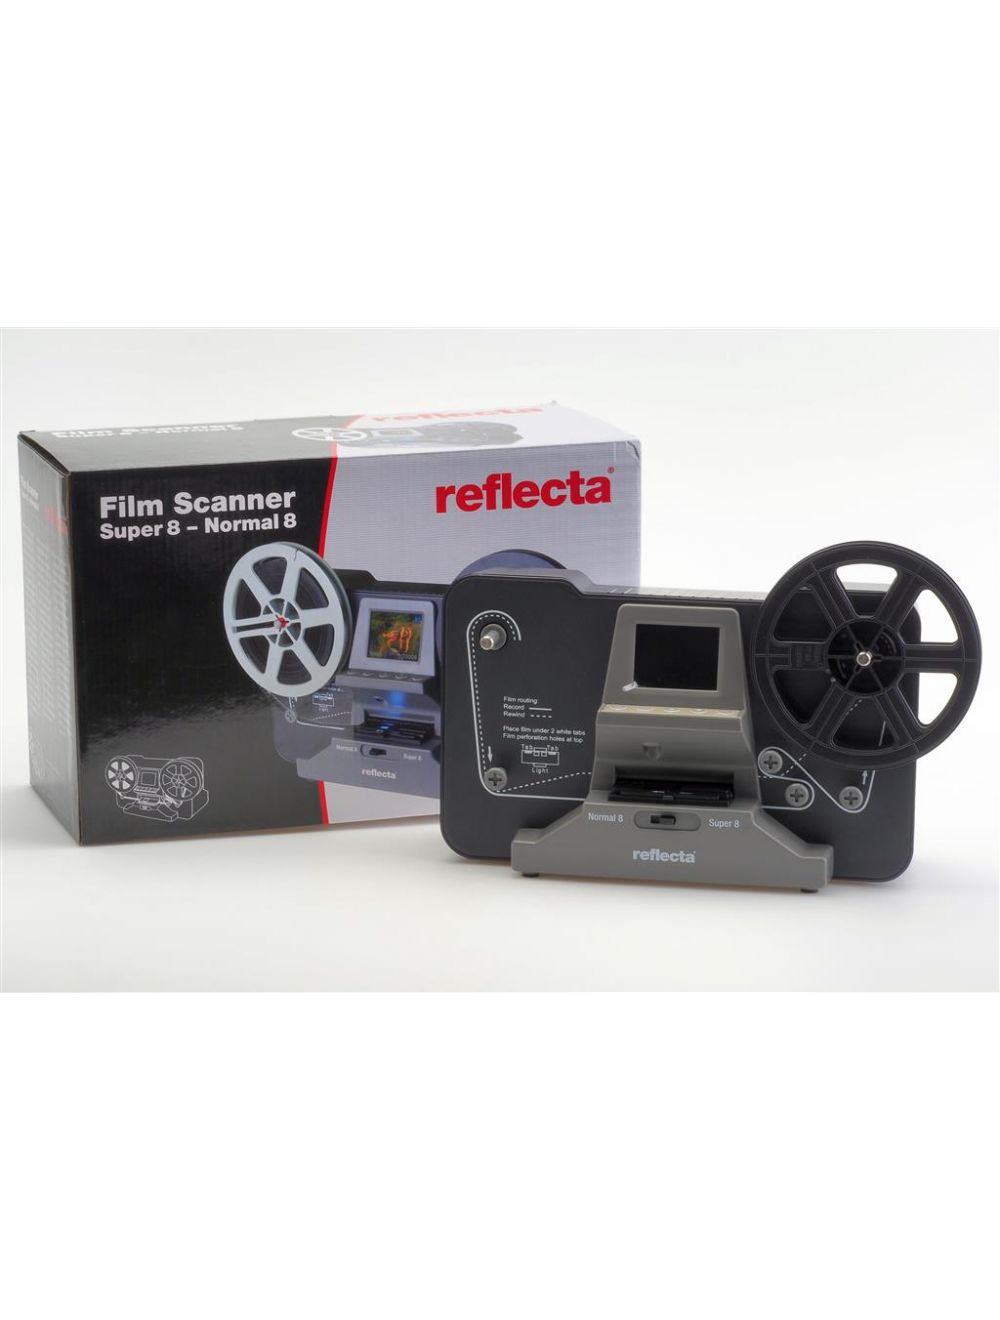 RENTAL- Reflecta Film Scanner Super 8 - Normal 8